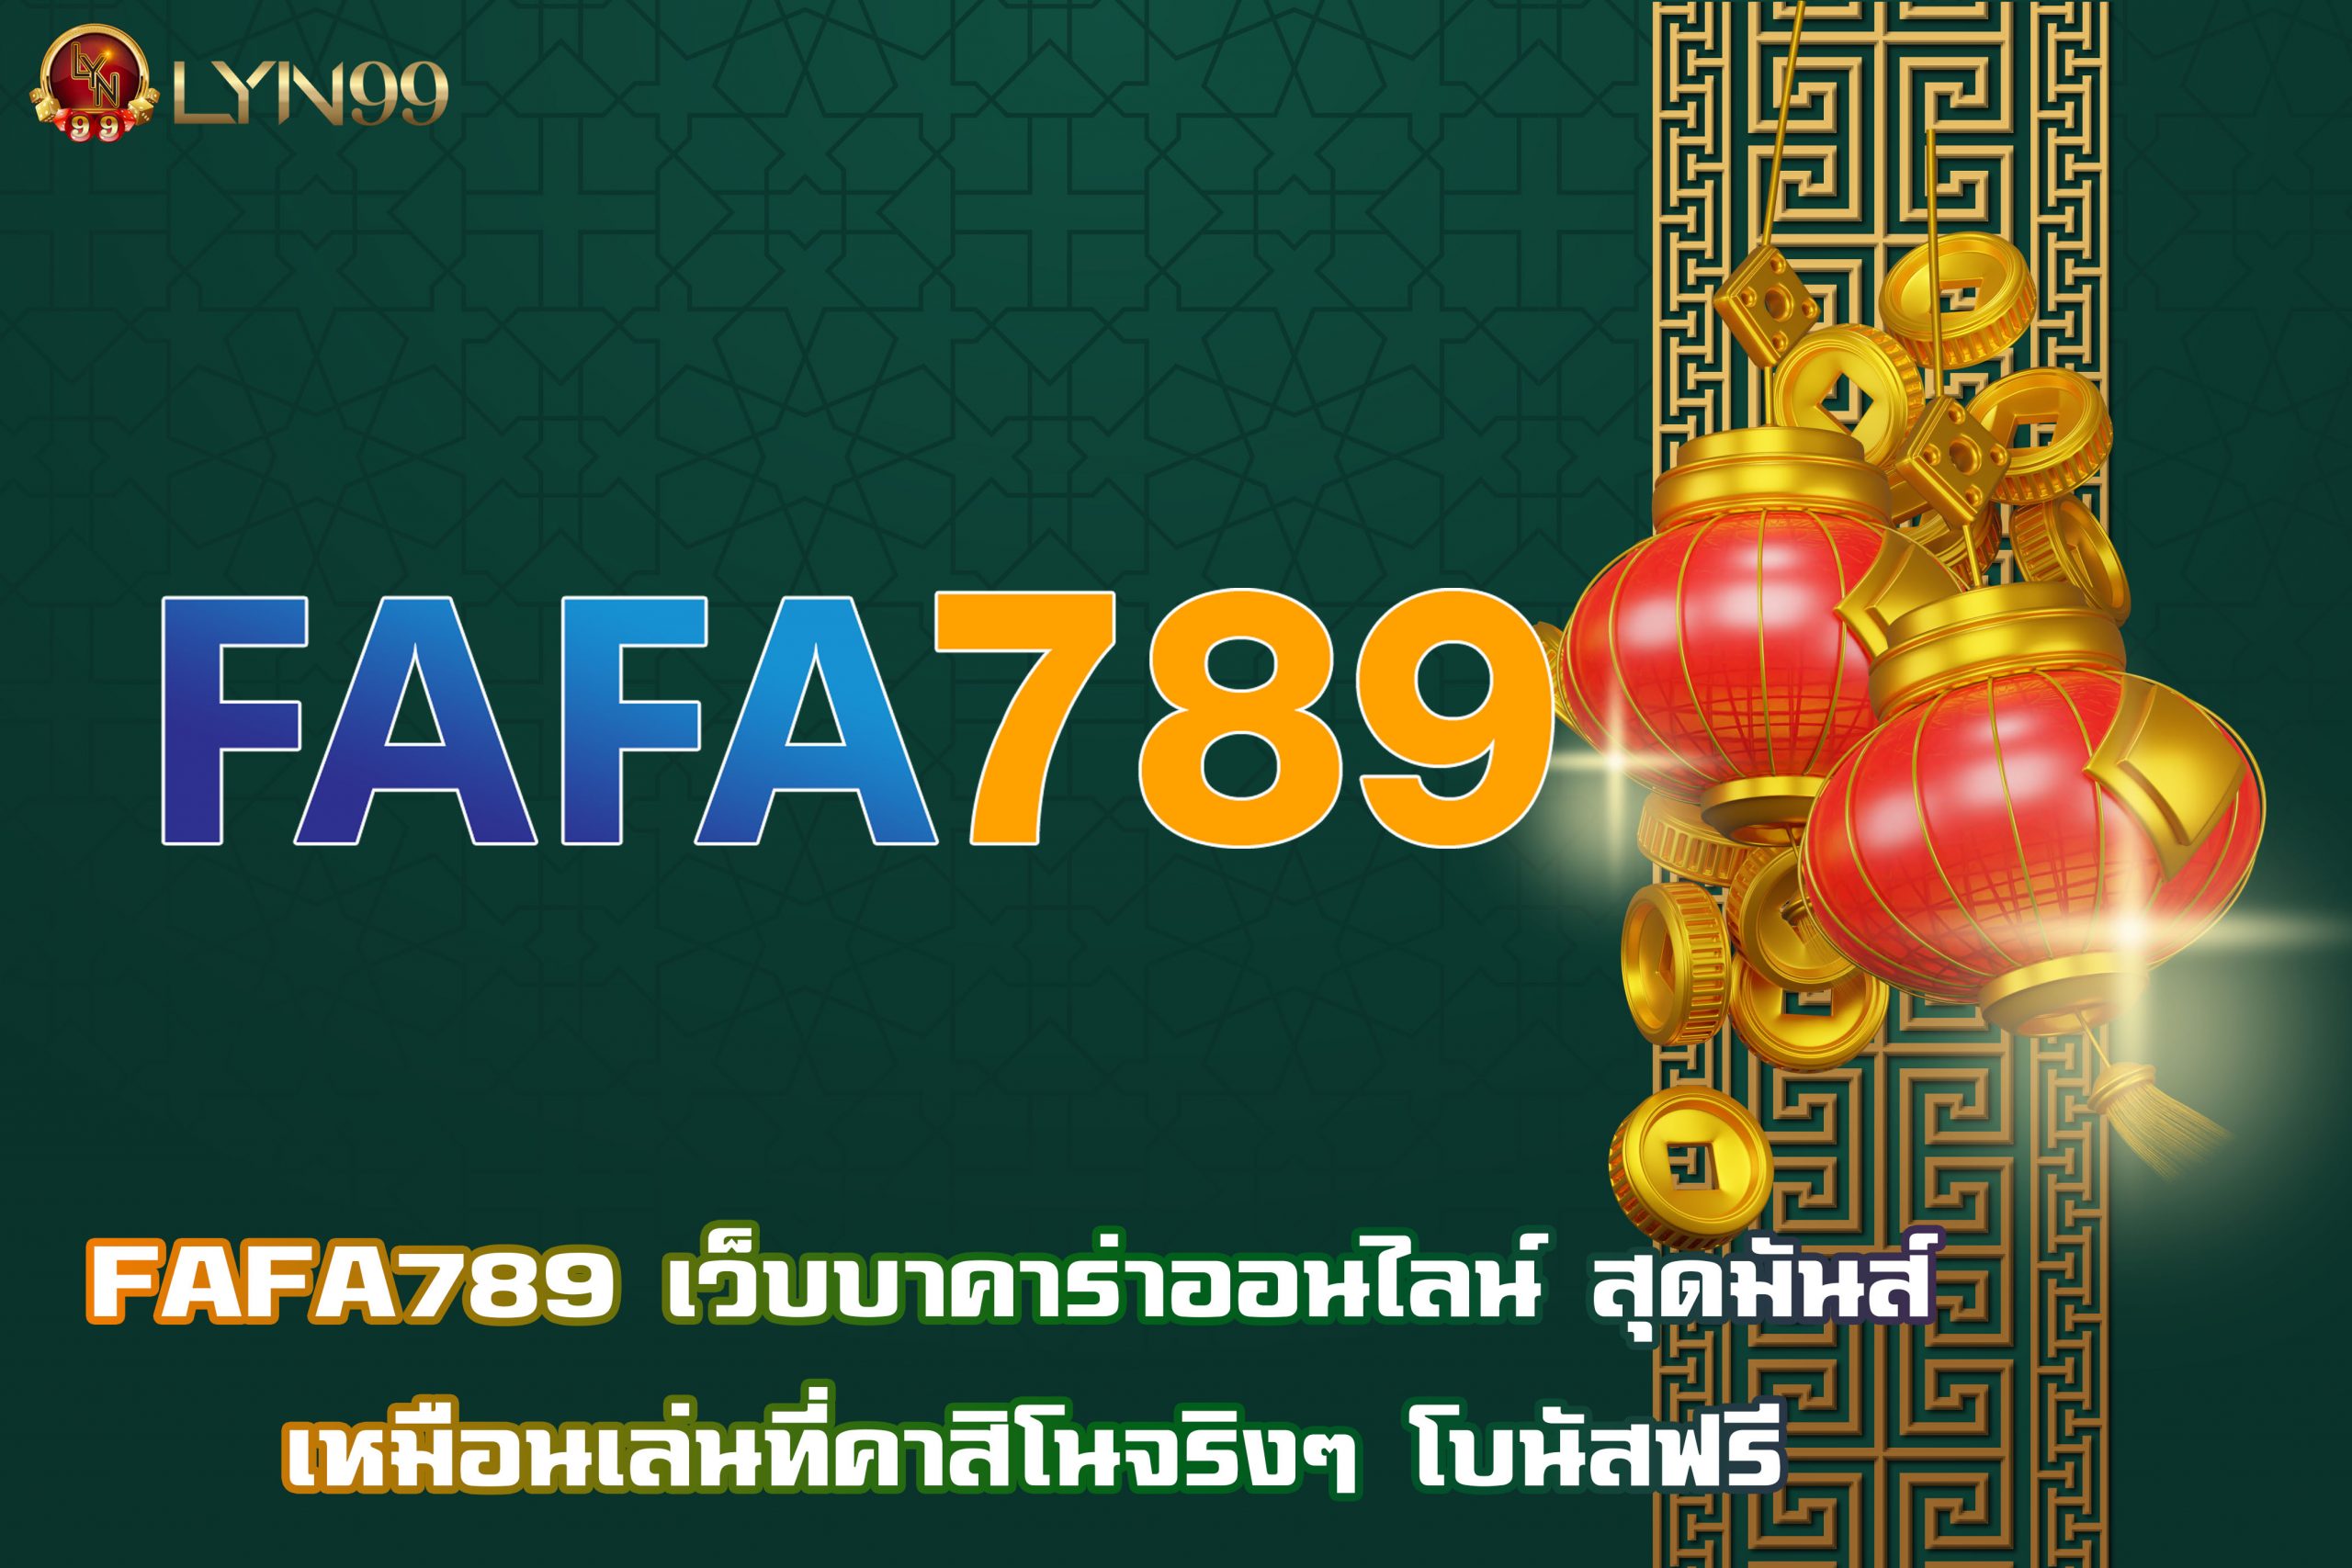 FAFA789